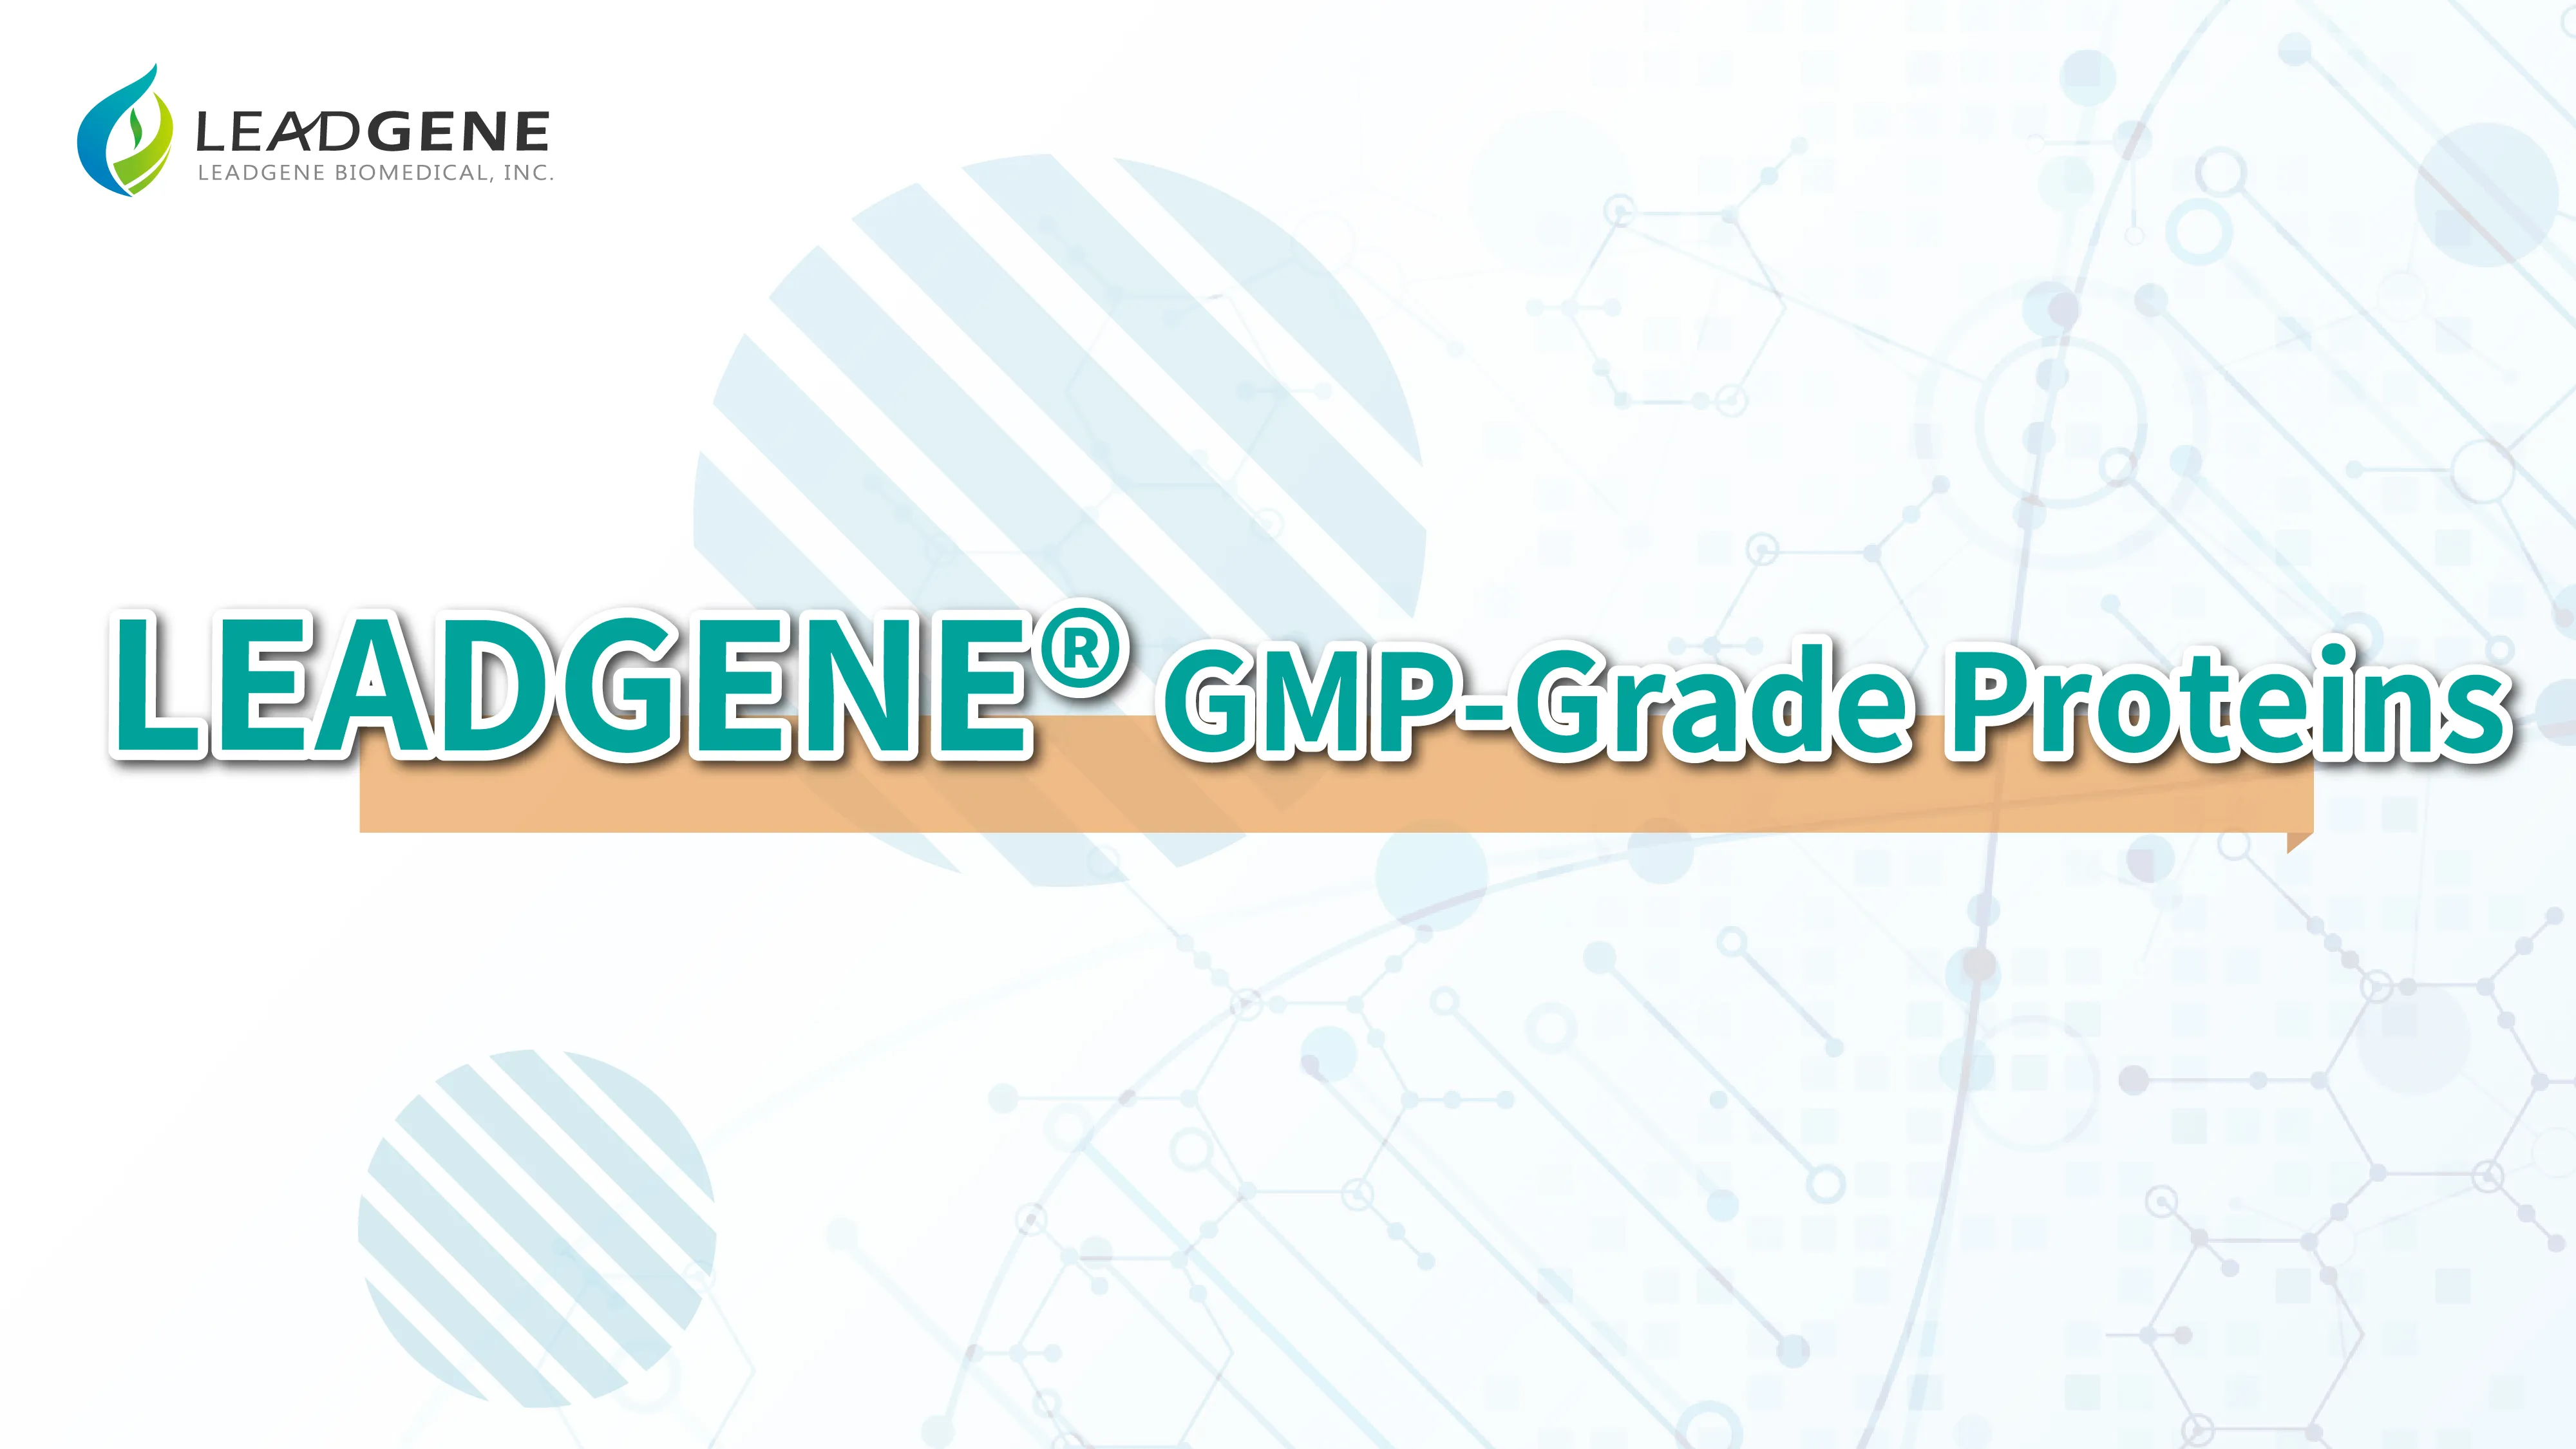 LEADGENE GMP-Grade Proteins